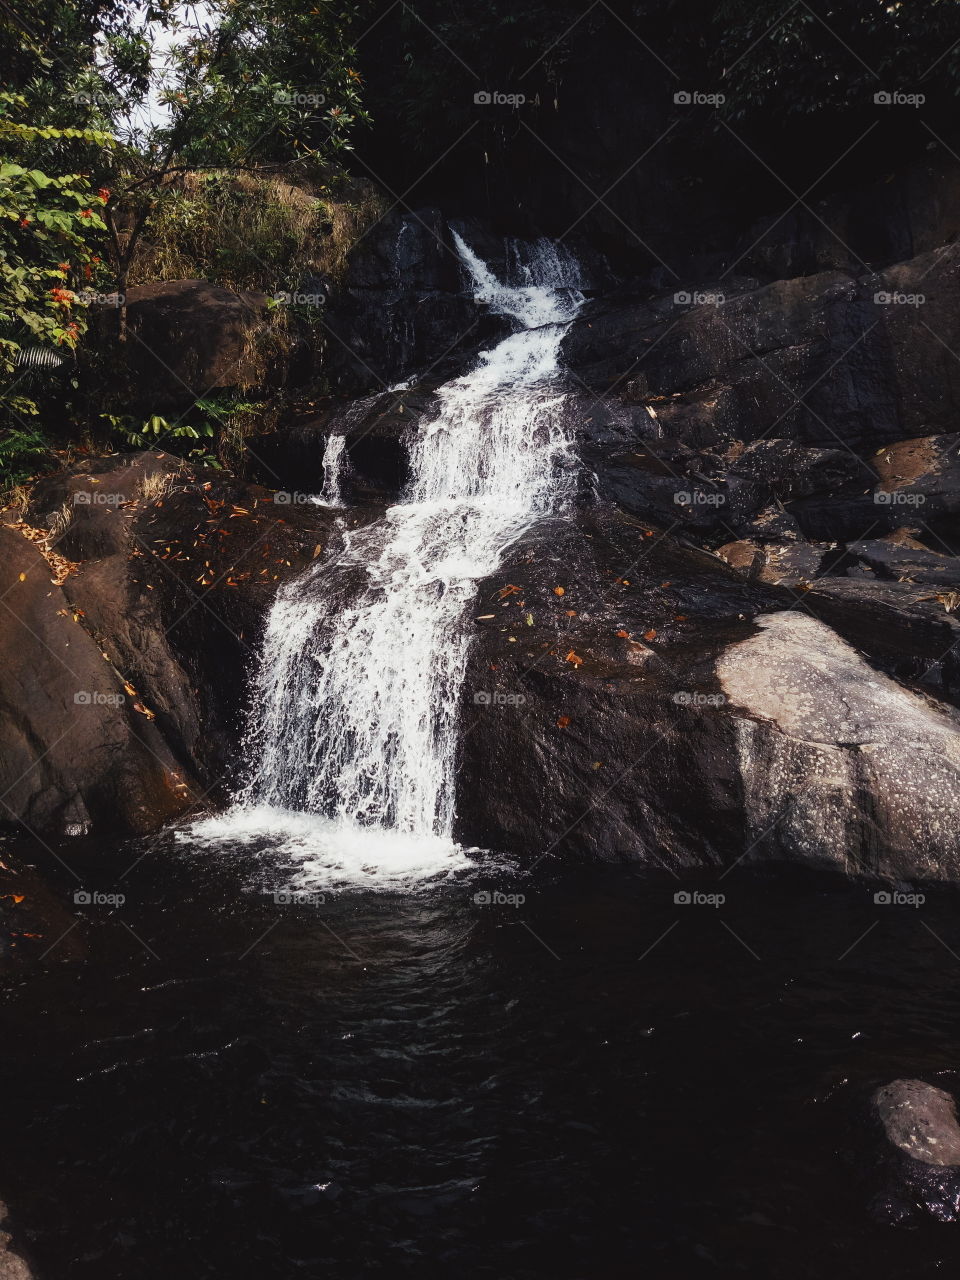 the wild starting of river,  thusharagiri  waterfalls  India